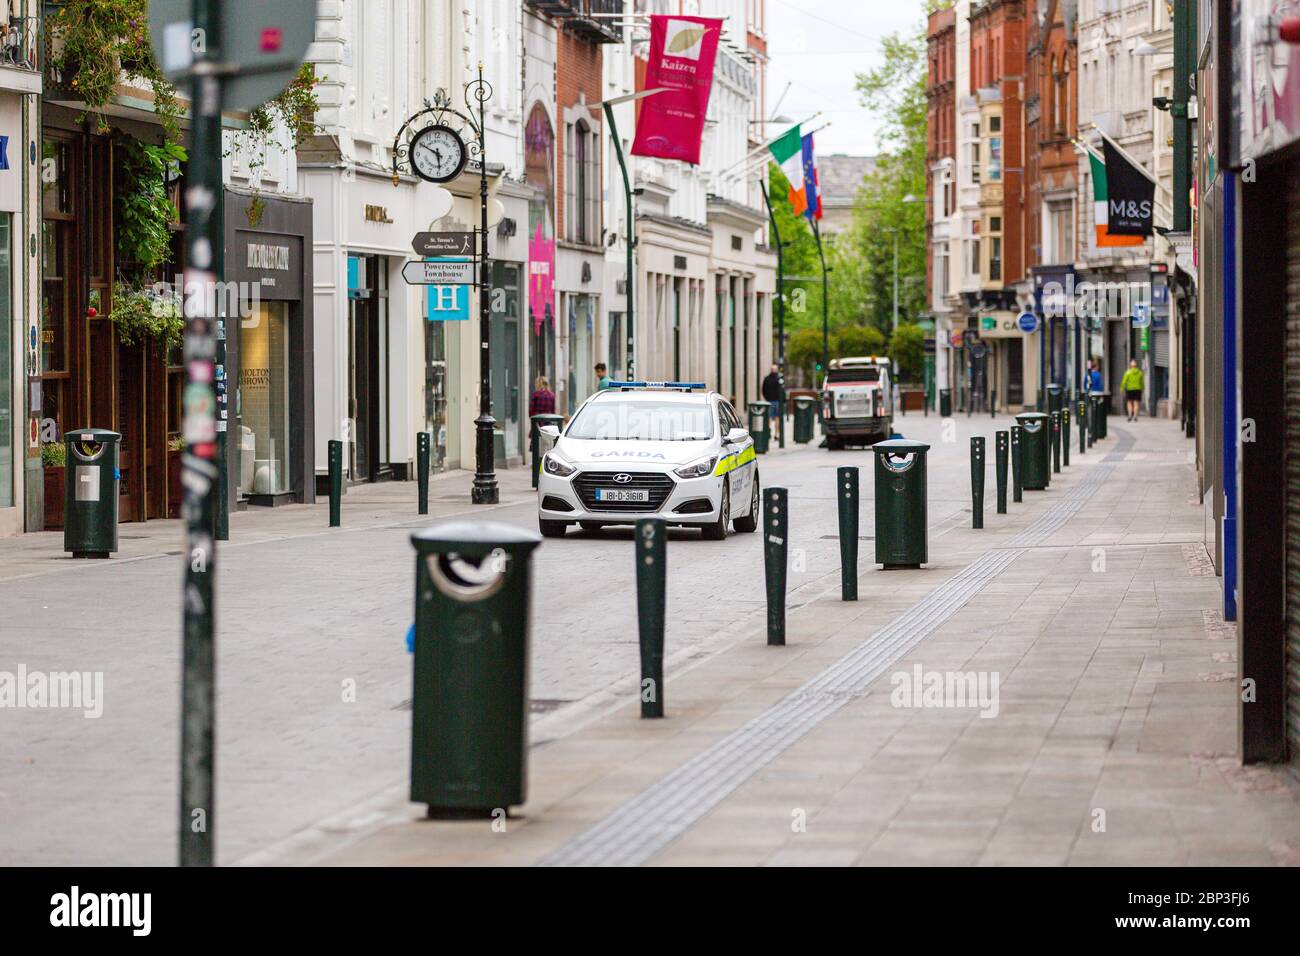 Dublin, Irland. Mai 2020. Garda patrouilliert Auto fahren durch leere Grafton Straße in Dublinj Stadtzentrum während der Covid-19 Pandemie Sperre. Stockfoto